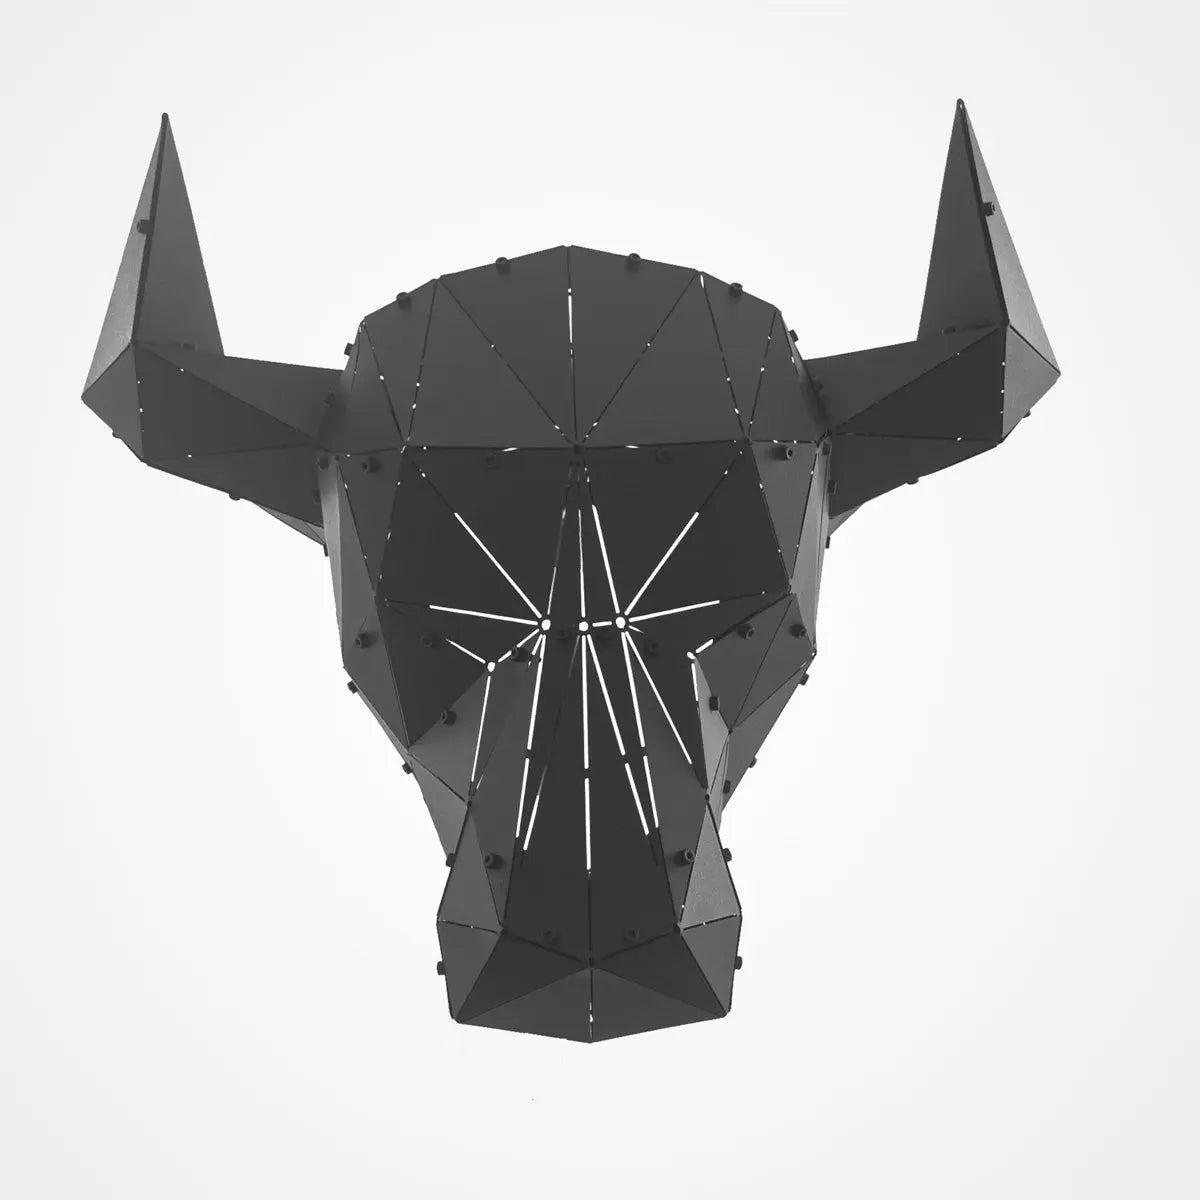 BULLY V2 | 3D Metal Geometric Bull Head Wall Decor OTTOCKRAFT™